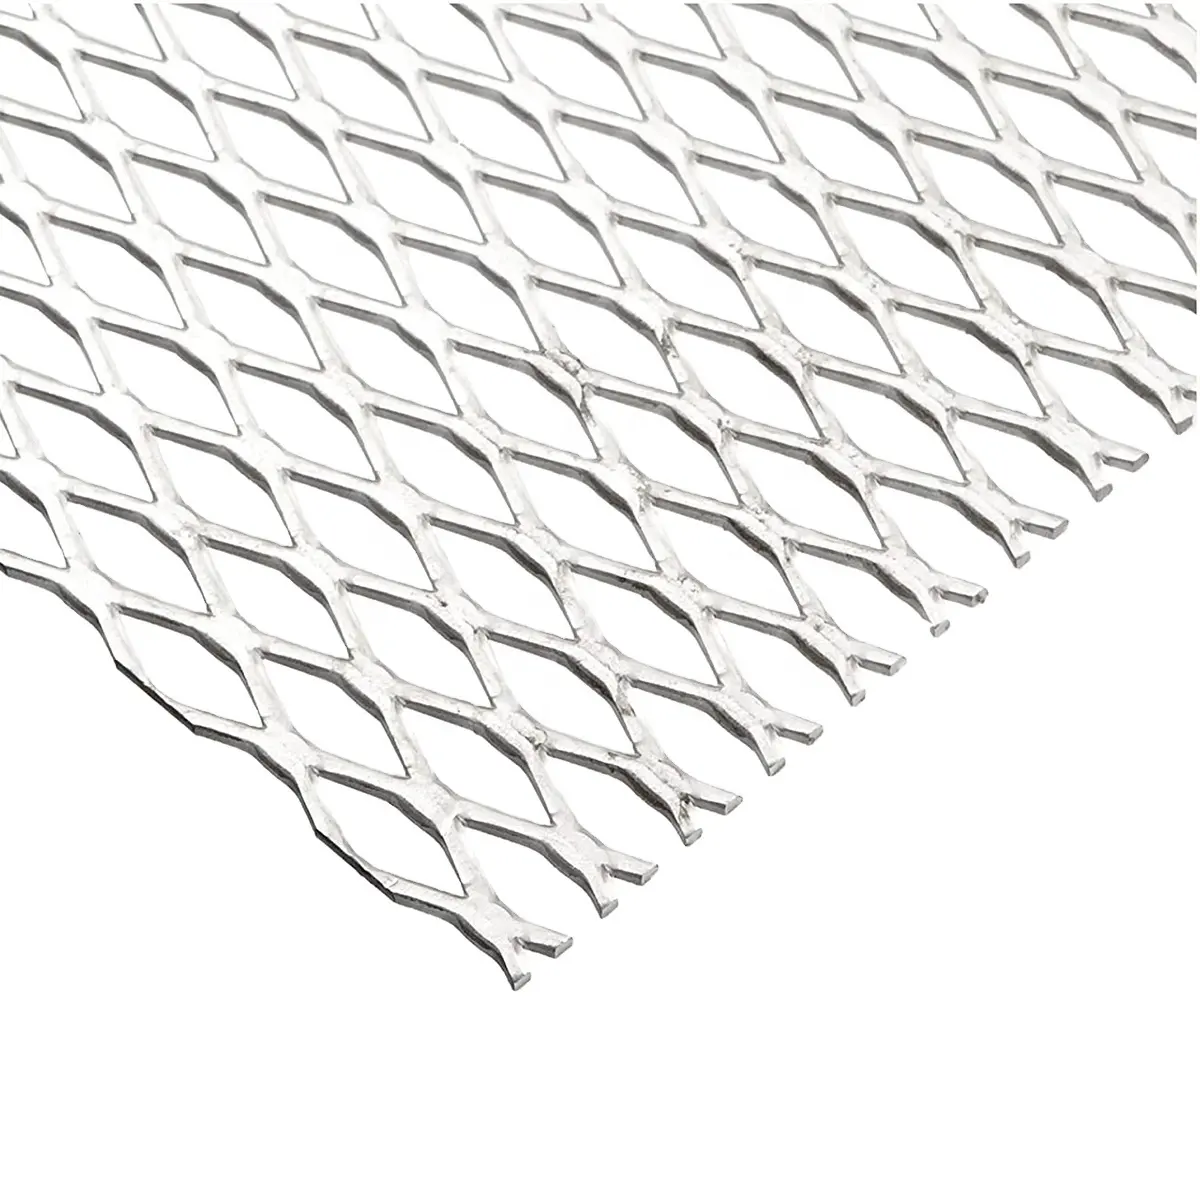 DIAMANTGELG gotisch Edelstahl erweitertes Metall Lattenmaschennetz Preis Aluminium-Drahtnetz/Erweitertes Drahtnetz Metall/Stahlblechplatte